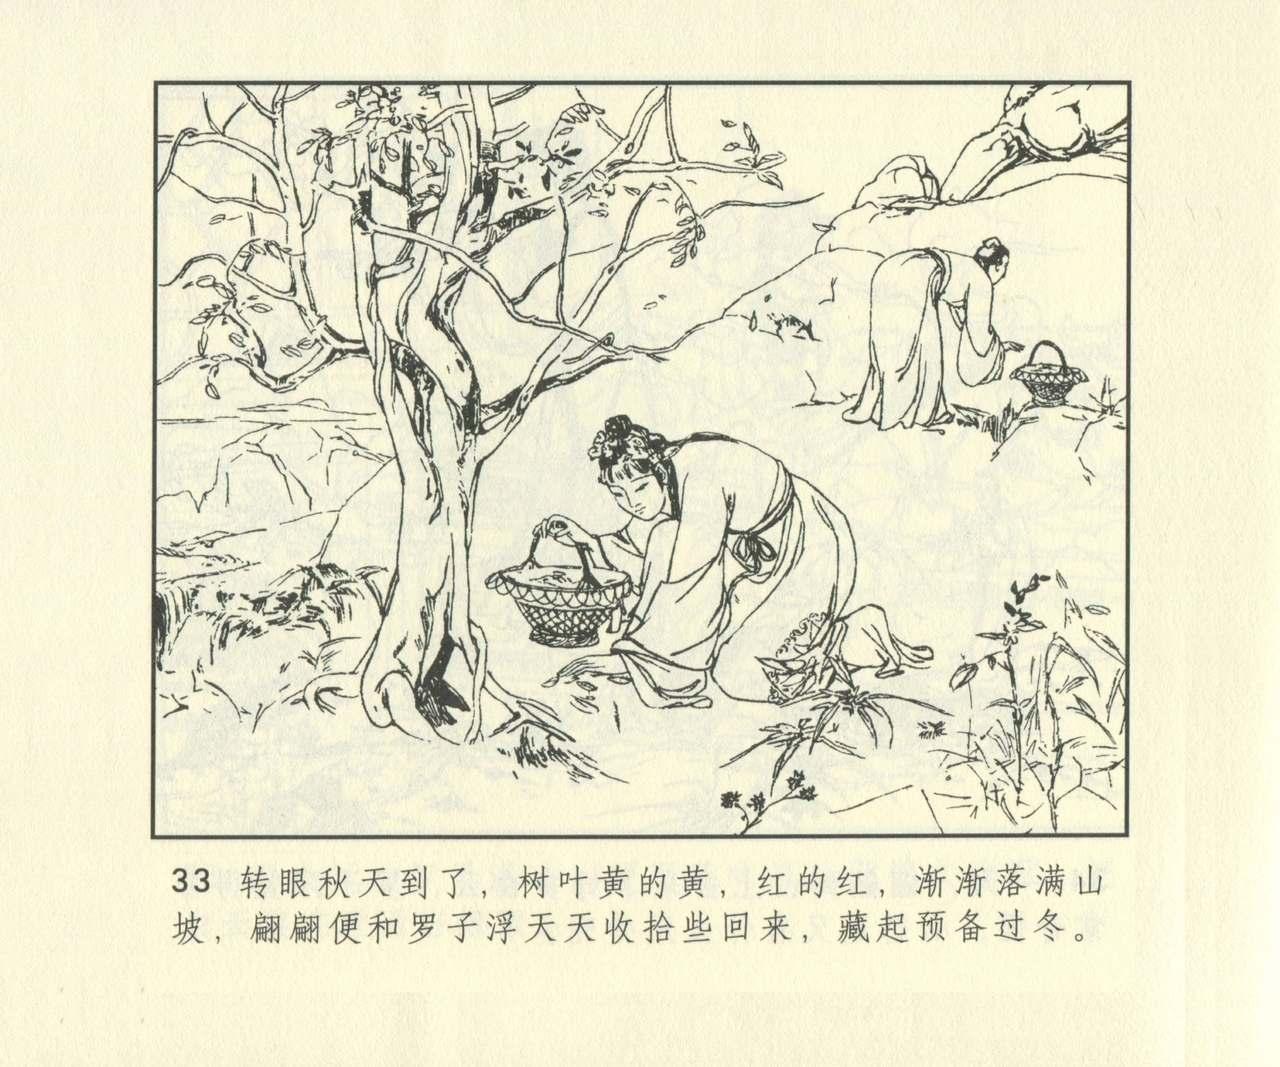 聊斋志异 张玮等绘 天津人民美术出版社 卷二十一 ~ 三十 649